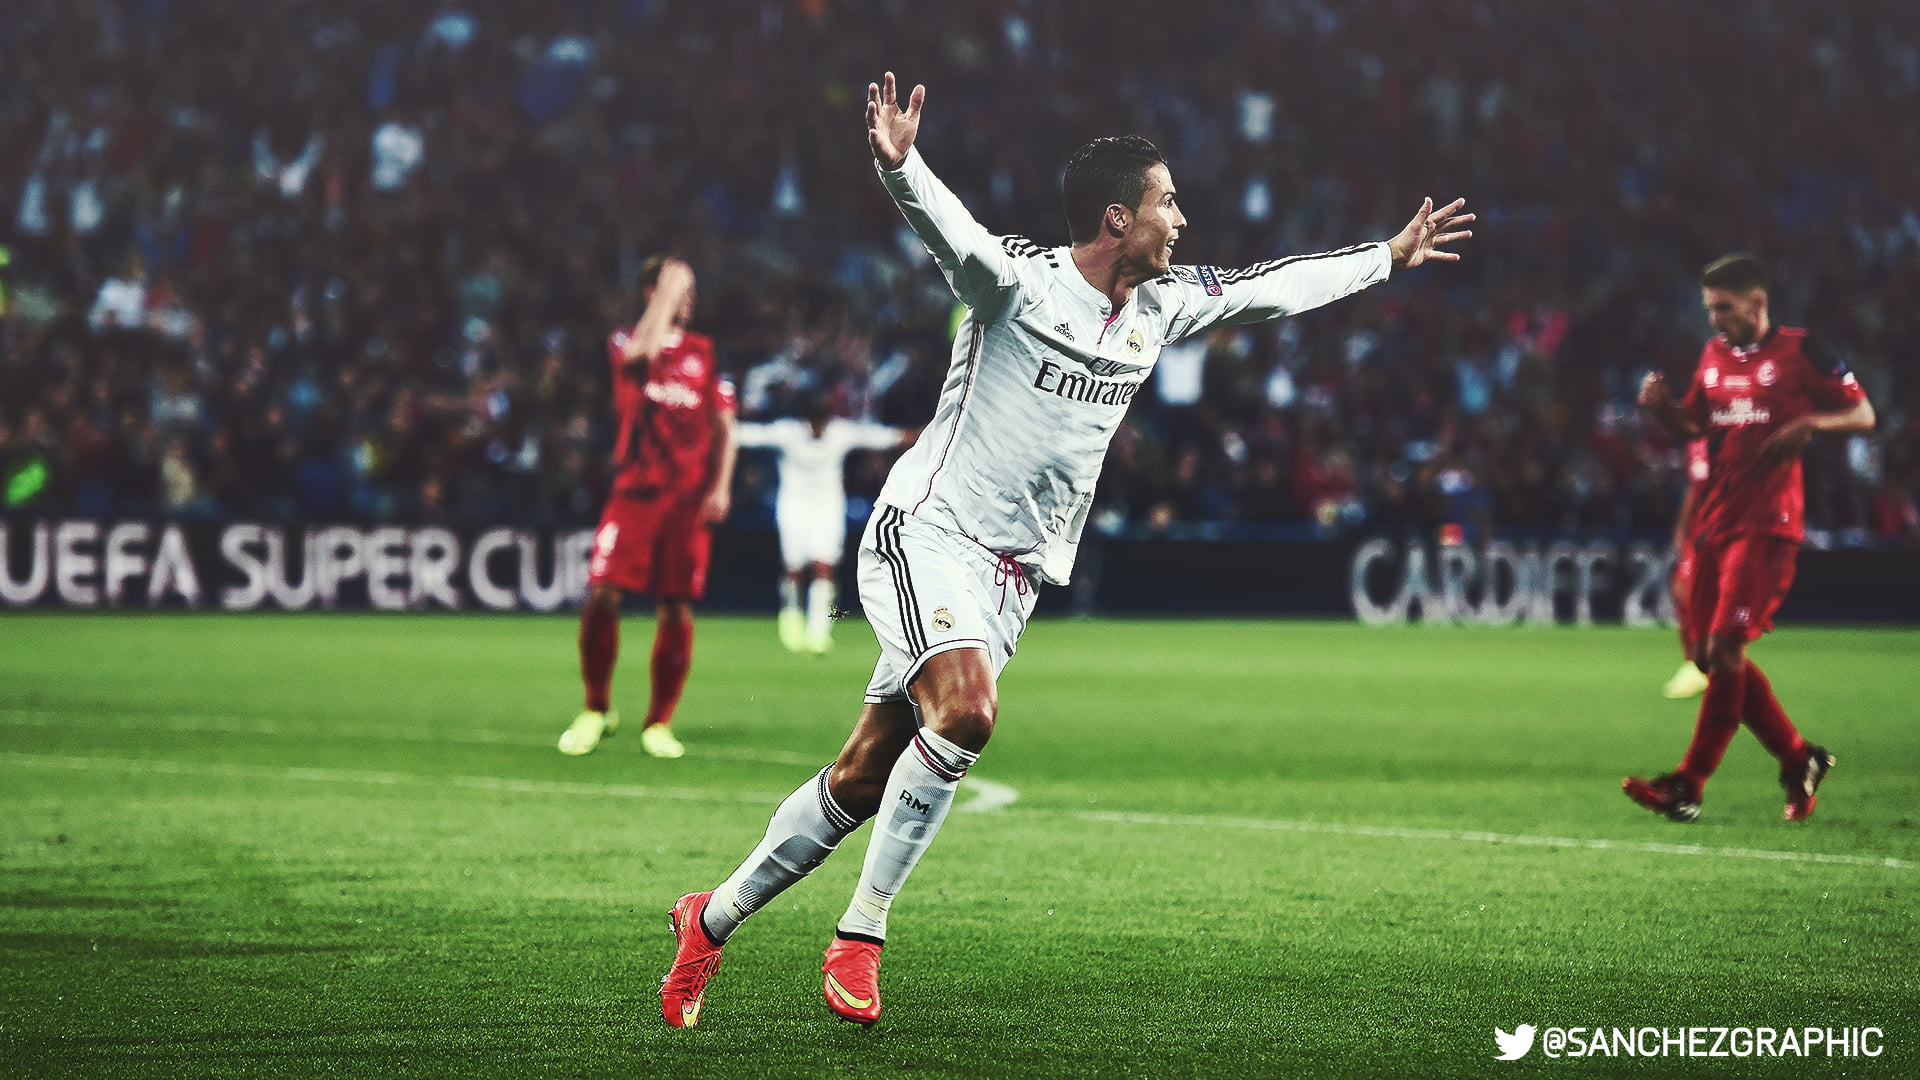 Cristiano Ronaldo wallpaper, Sanchez Graphics , Cristiano Ronaldo, HDR, Real Madrid